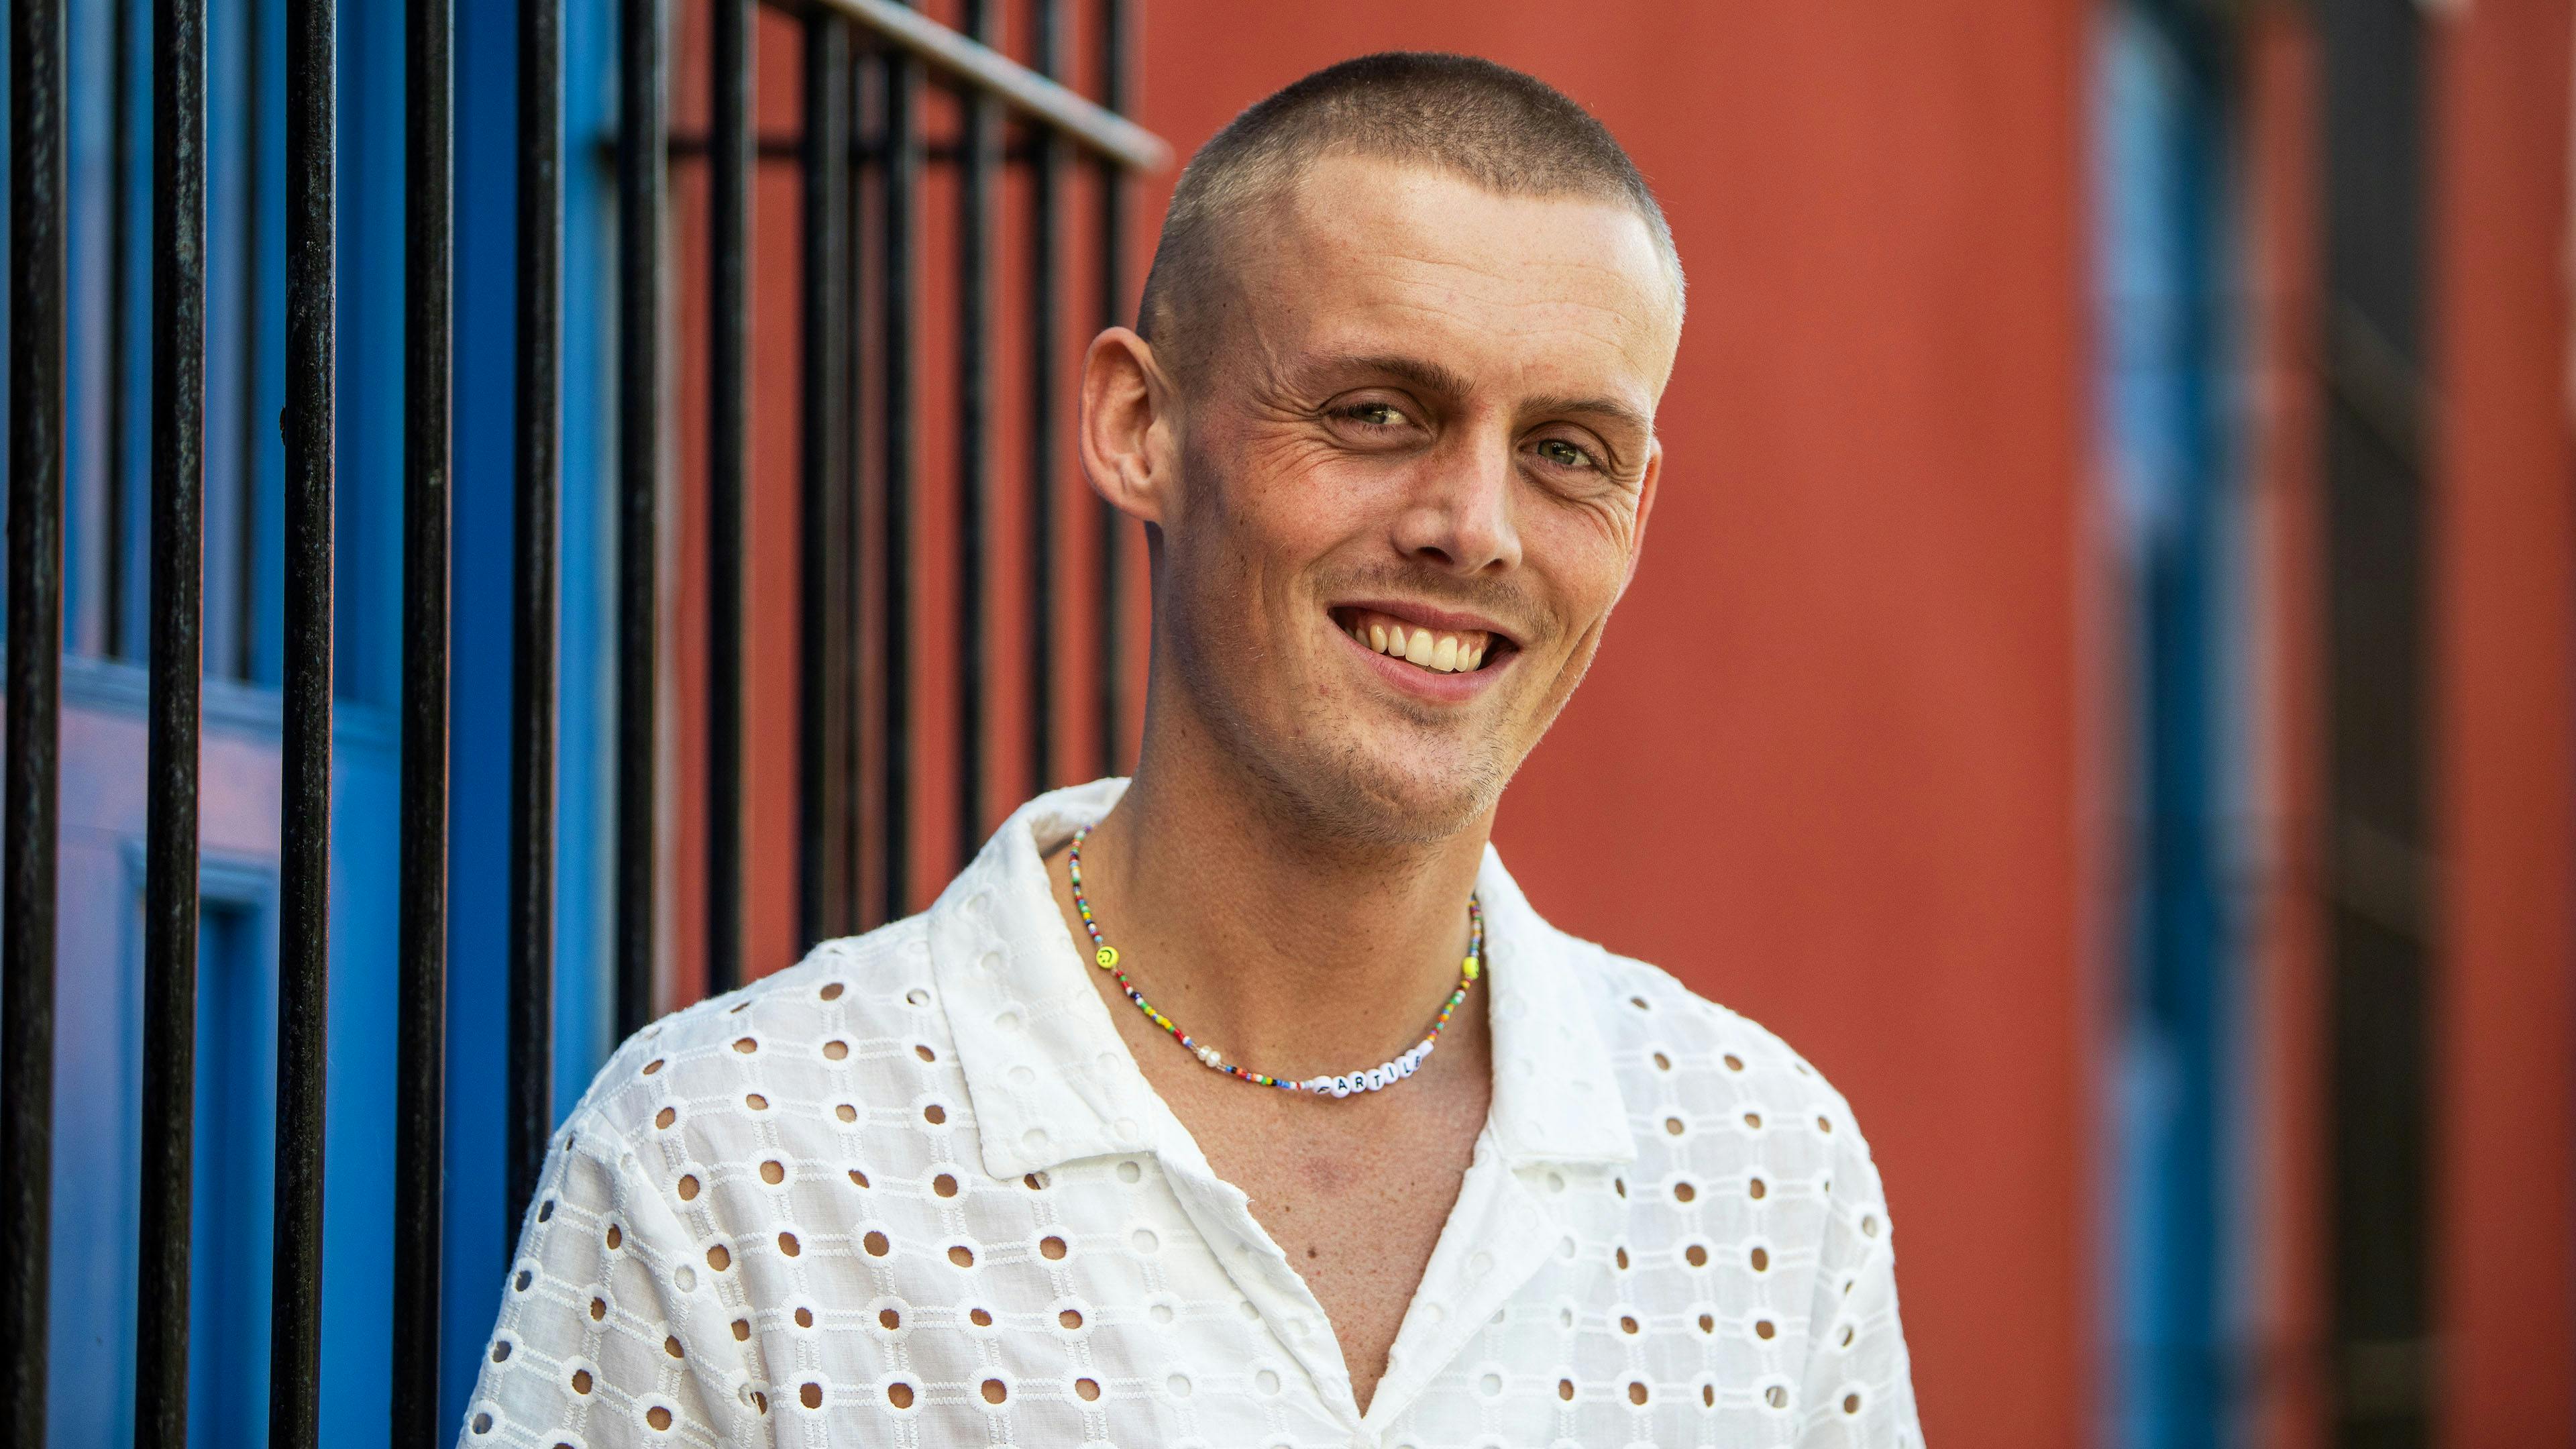 Rasmus, 27 år, Aarhus, single i tre år, restaurantchef.